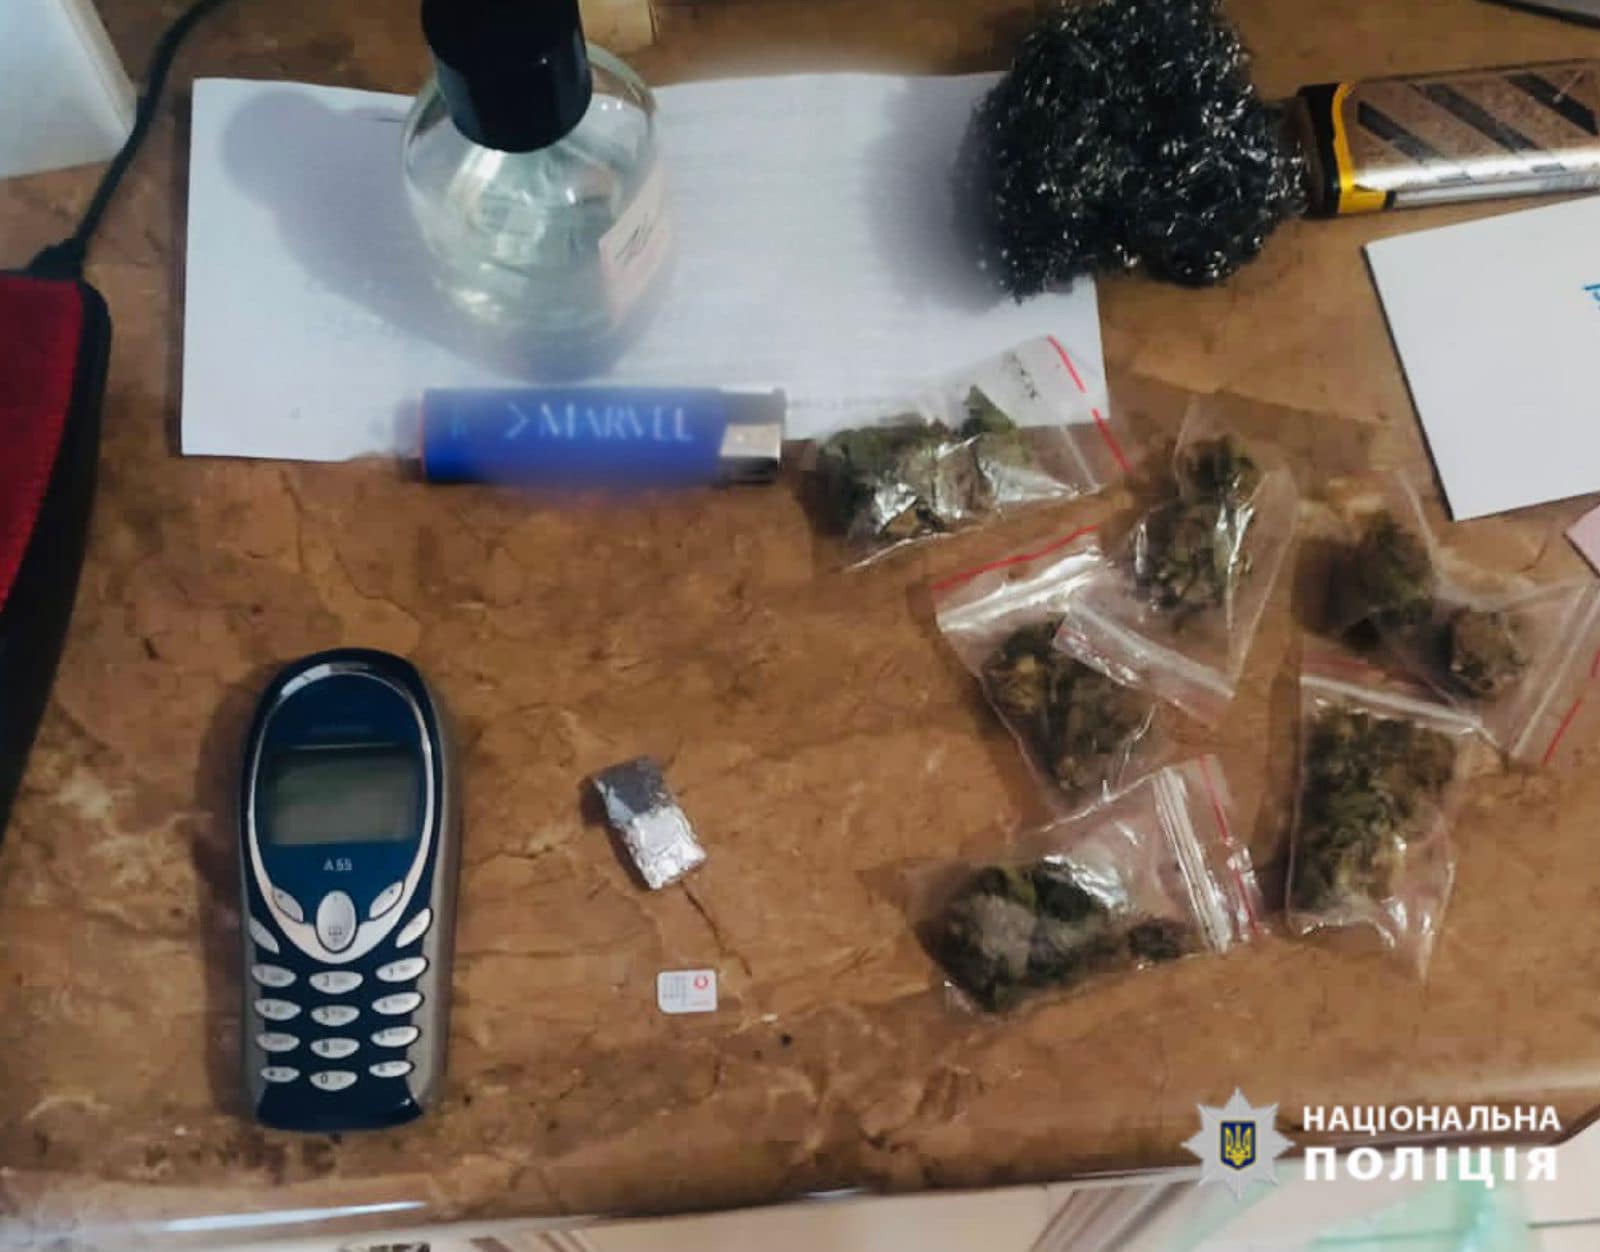 Понад кілограм наркотиків і гранати знайшли поліціянти вдома у прикарпатця (ФОТО)